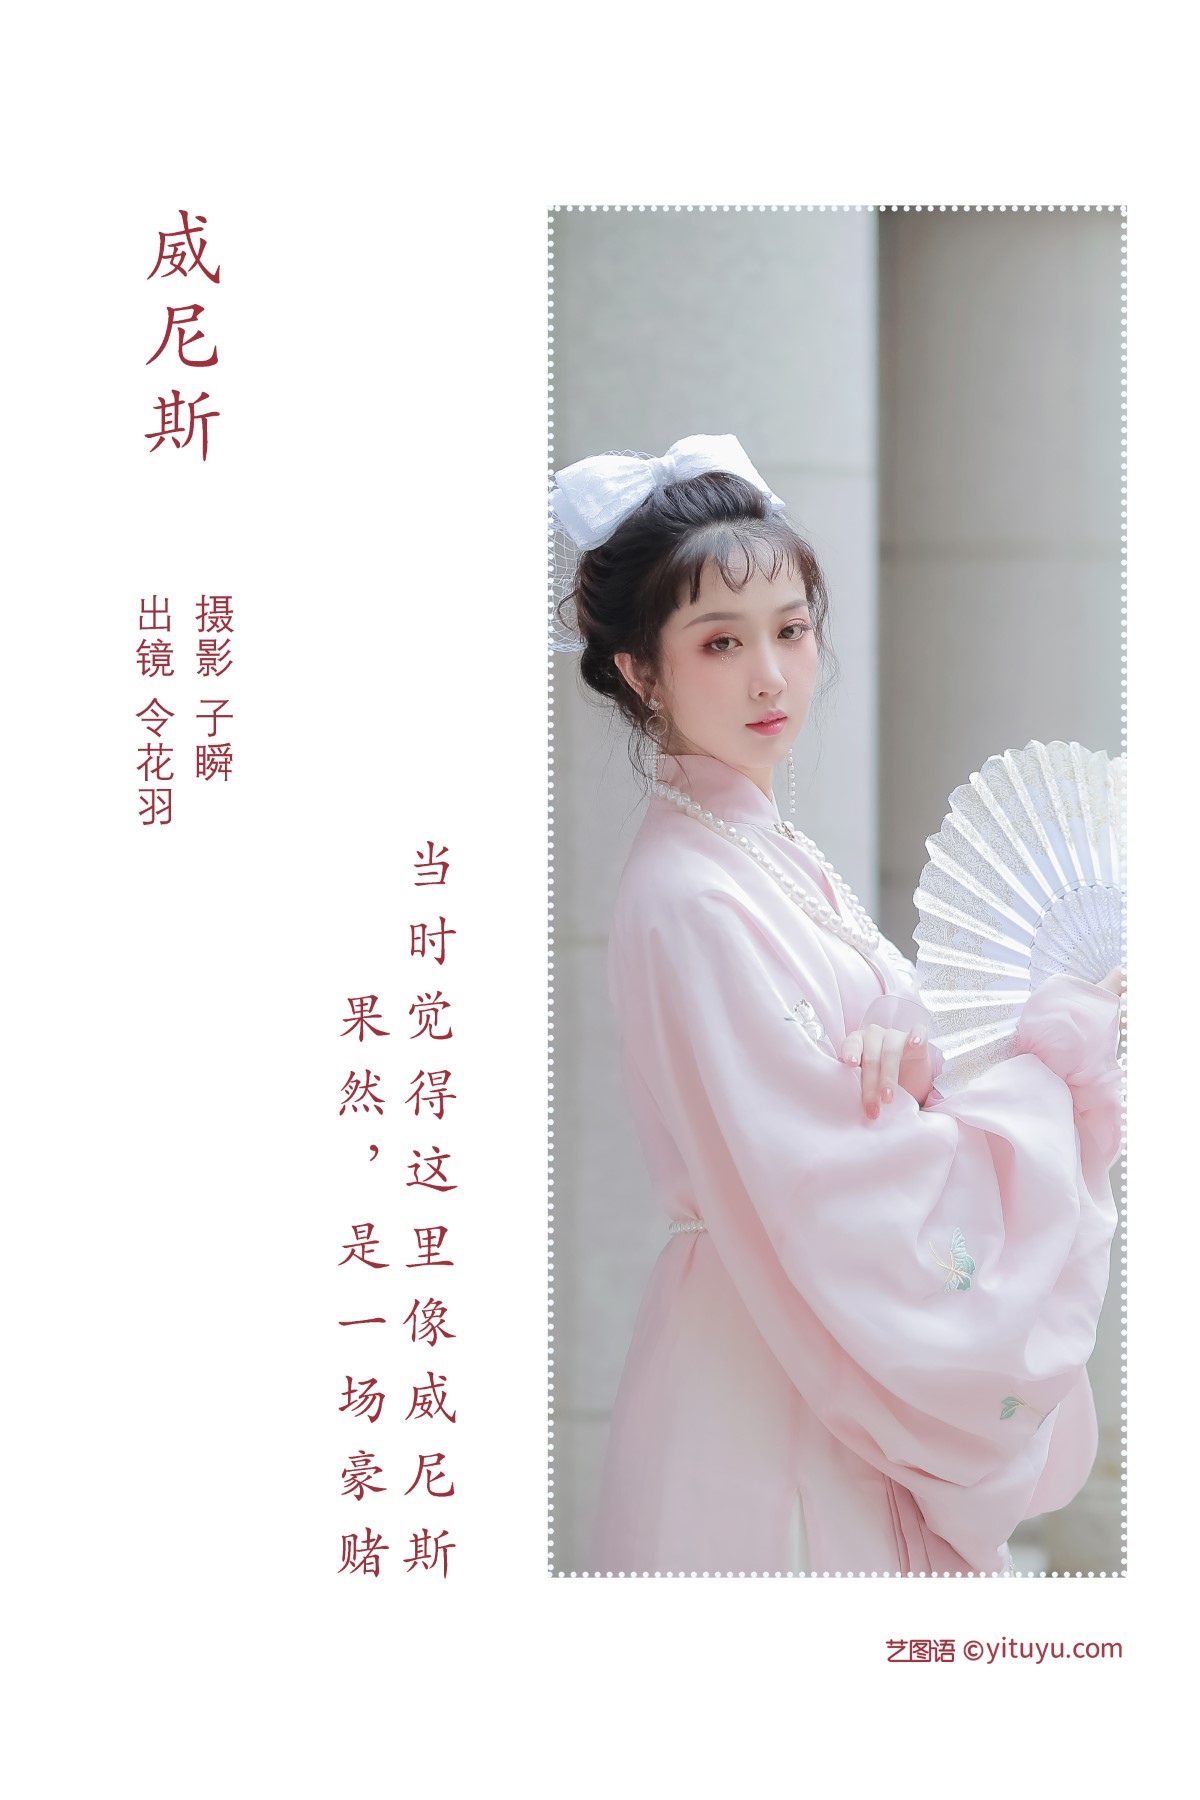 YiTuYu艺图语 Vol 1715 Ling Hua Yu 0001 2403968767.jpg